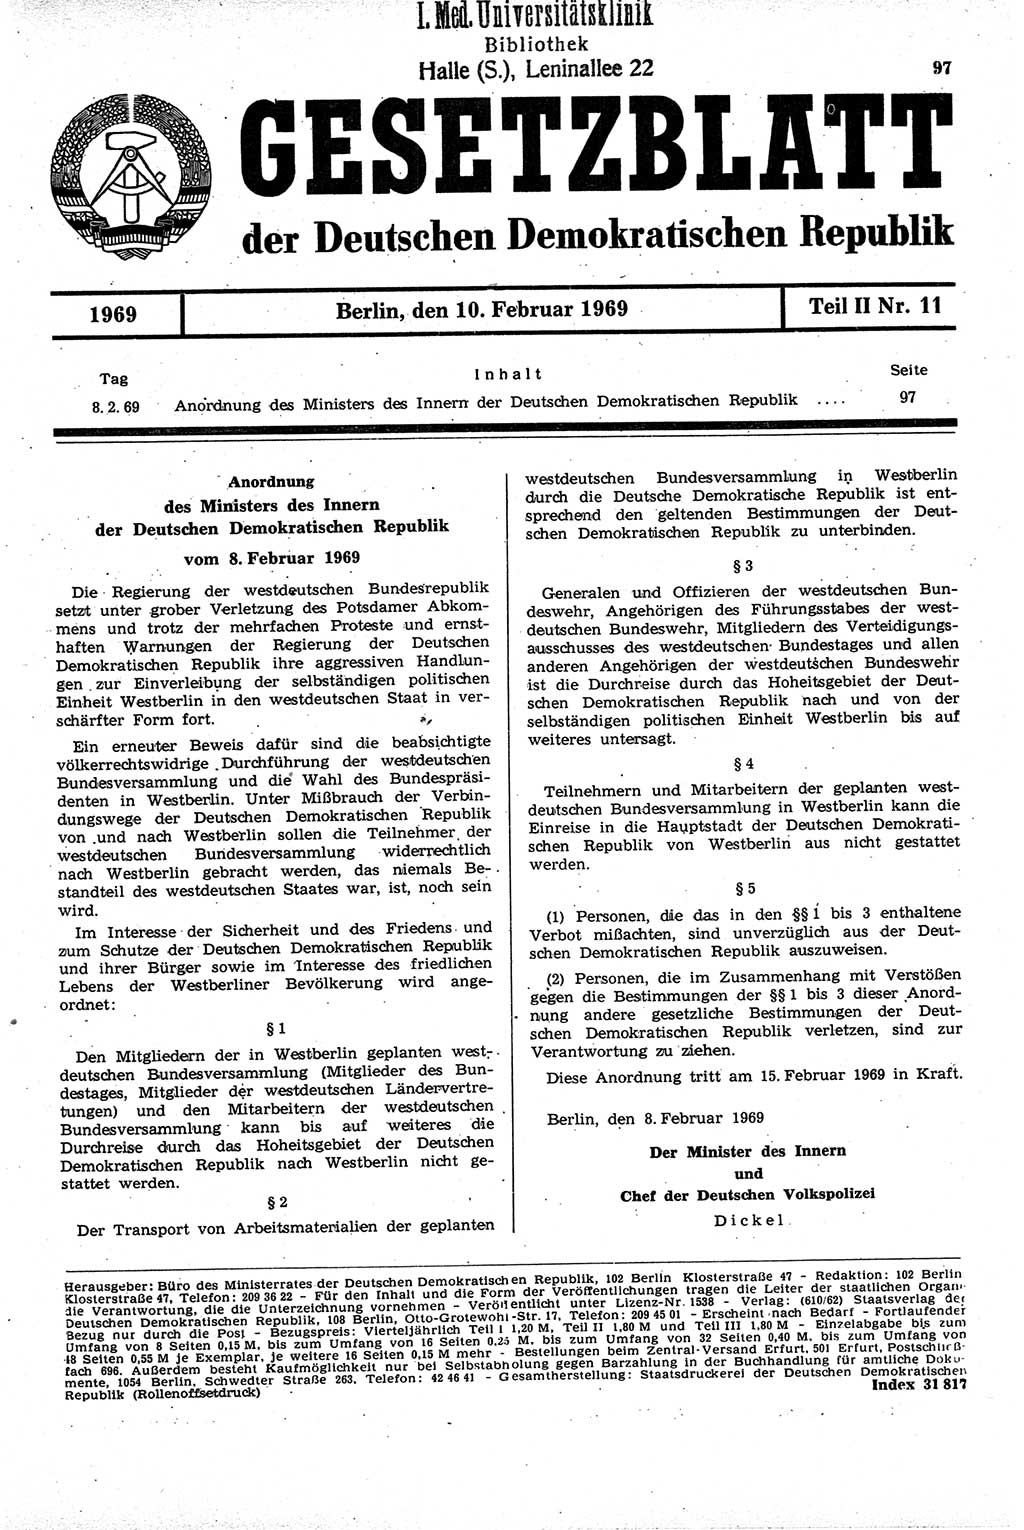 Gesetzblatt (GBl.) der Deutschen Demokratischen Republik (DDR) Teil ⅠⅠ 1969, Seite 97 (GBl. DDR ⅠⅠ 1969, S. 97)